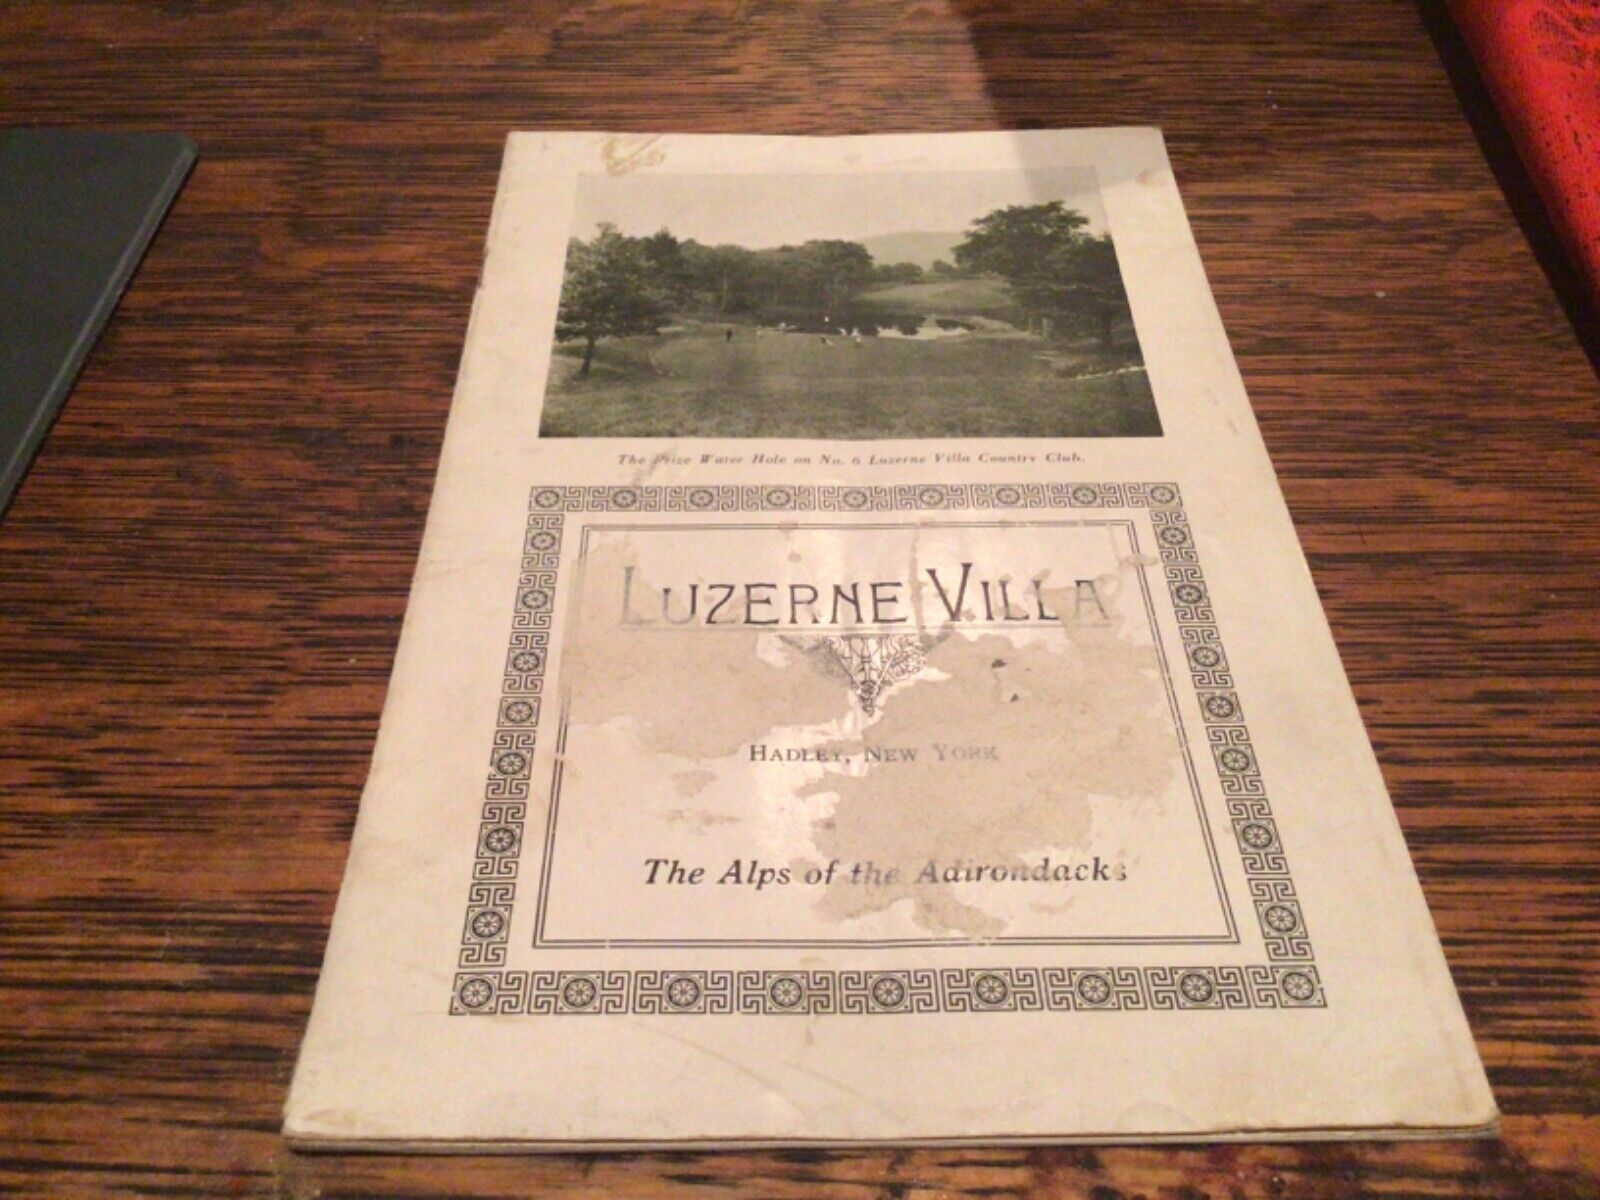 Luzerne Villa Hadley NY, Alps of the Adirondacks, 1928 Pictorial Brochure